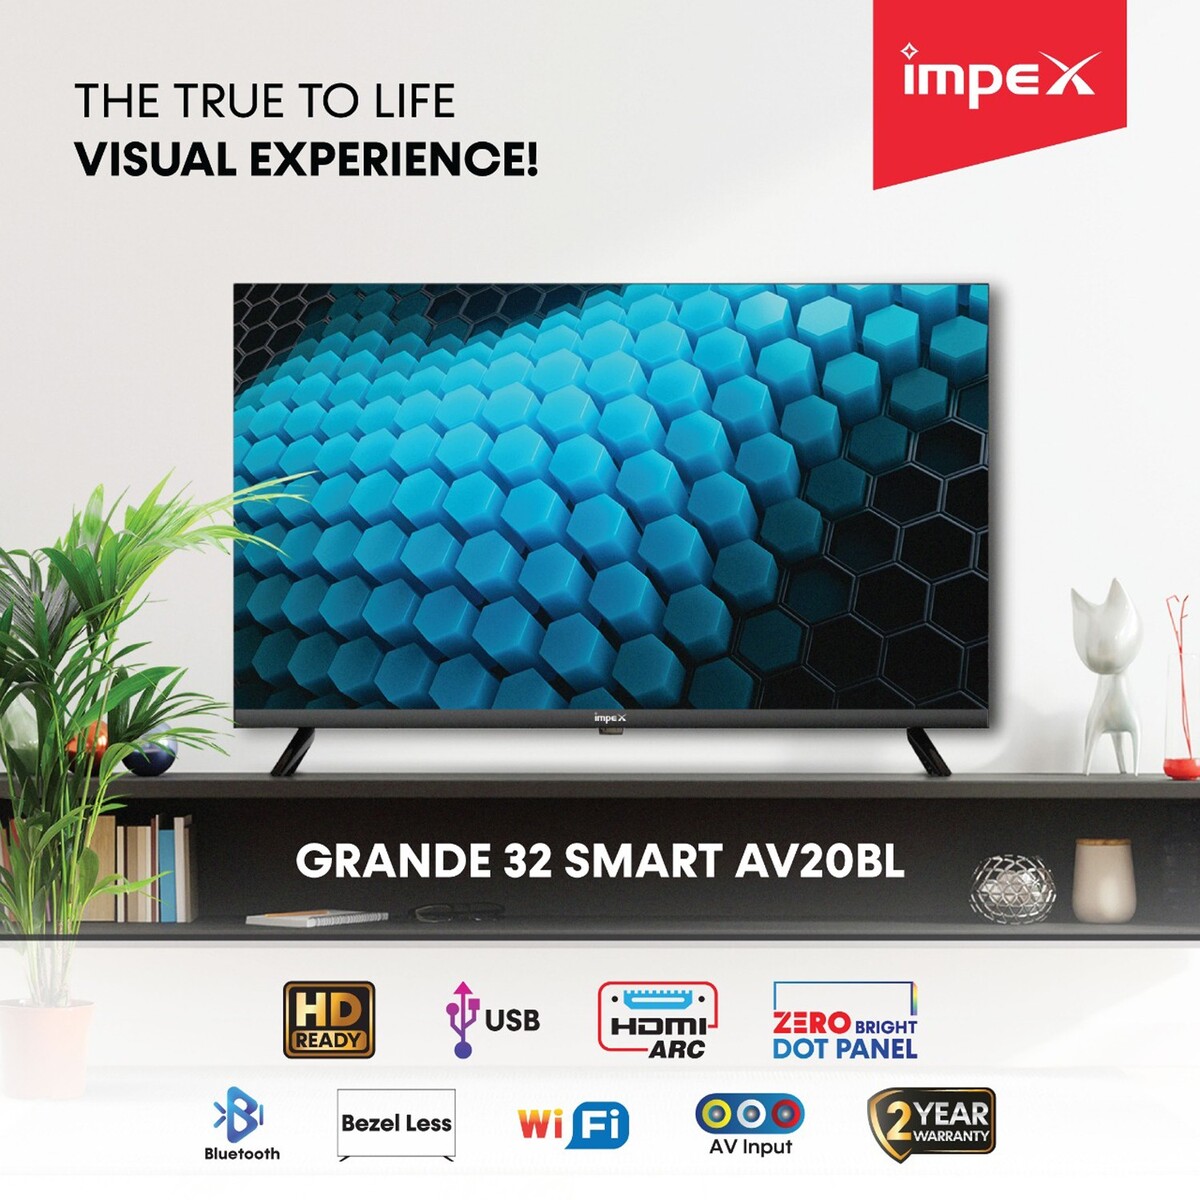 Impex HD Ready Smart LED TV Grande AV20BL 32"